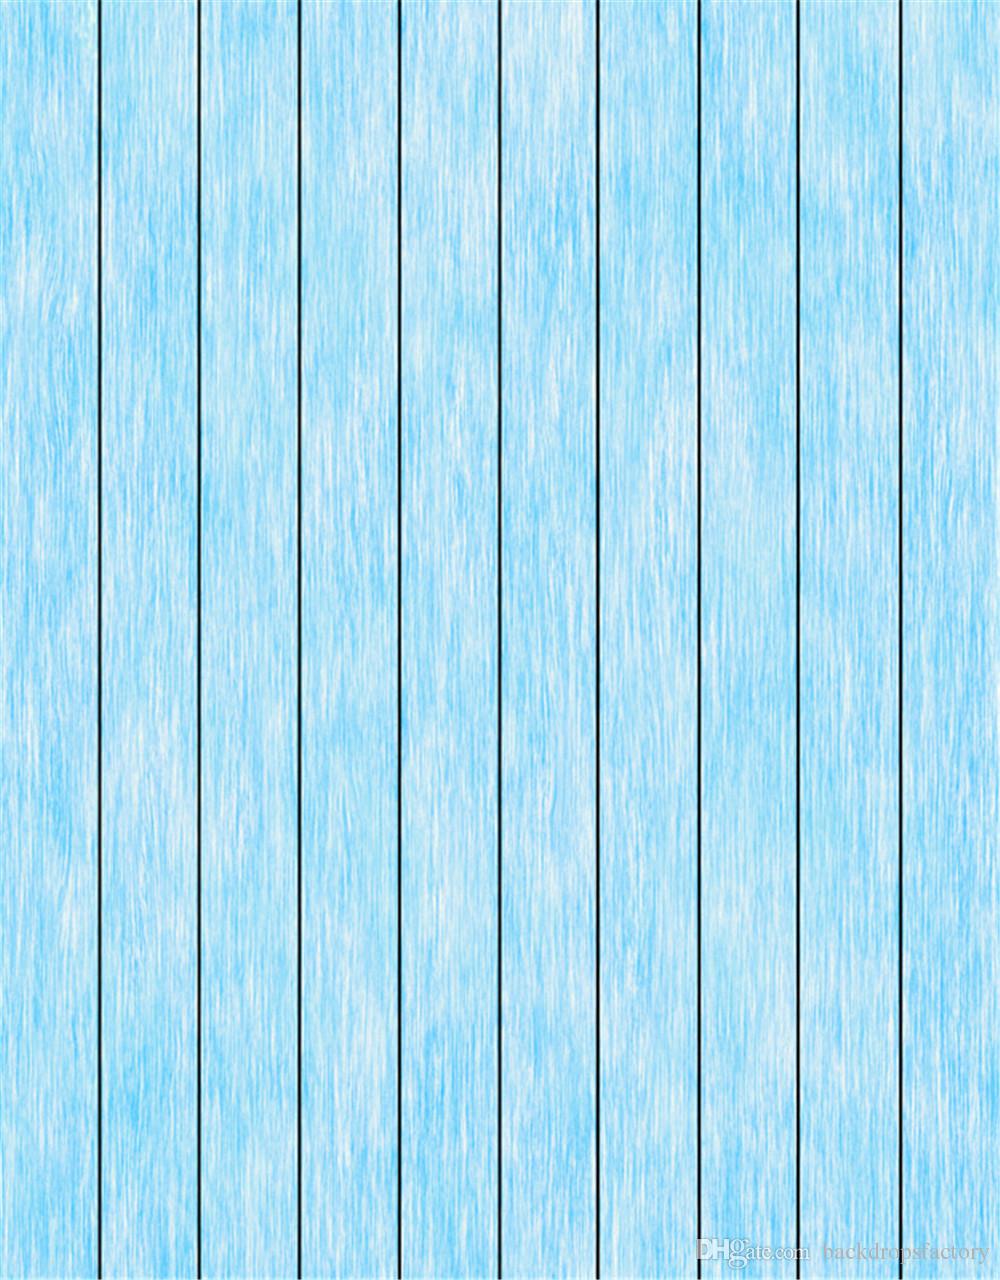 Light Blue Wooden Background - 1000x1280 Wallpaper 